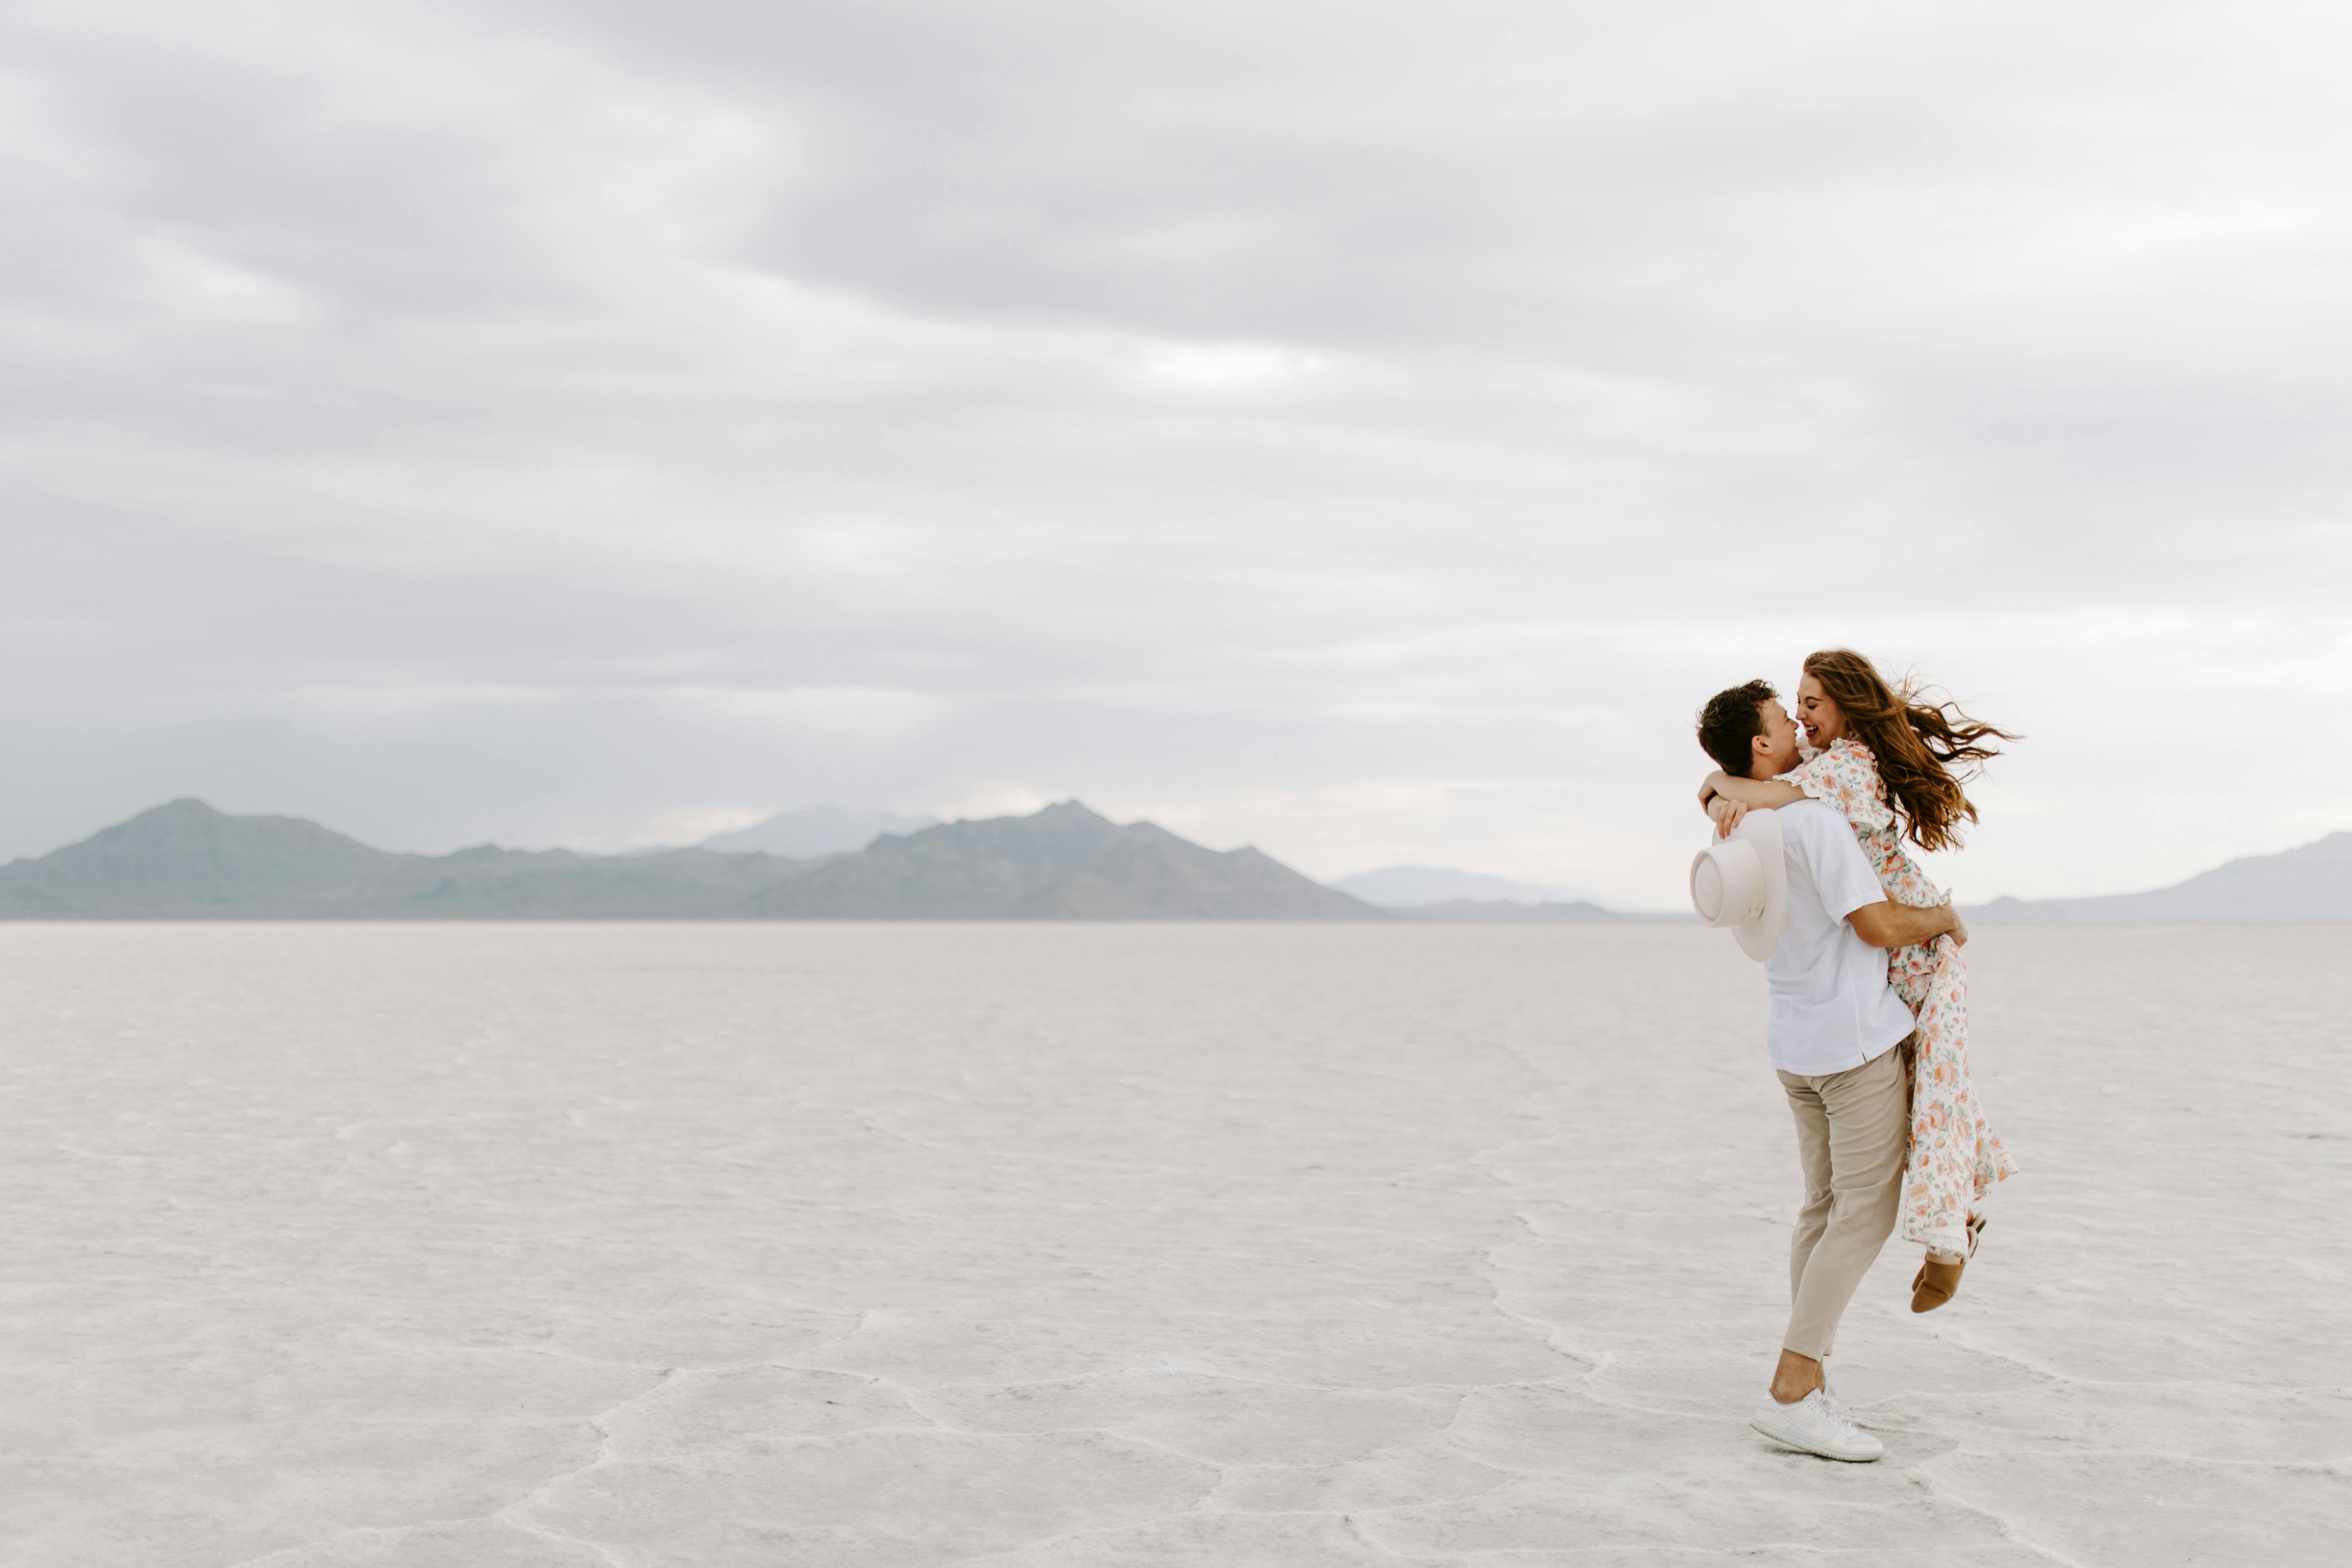 Una pareja abrazada en un desierto de arena blanca | Foto: Pexels